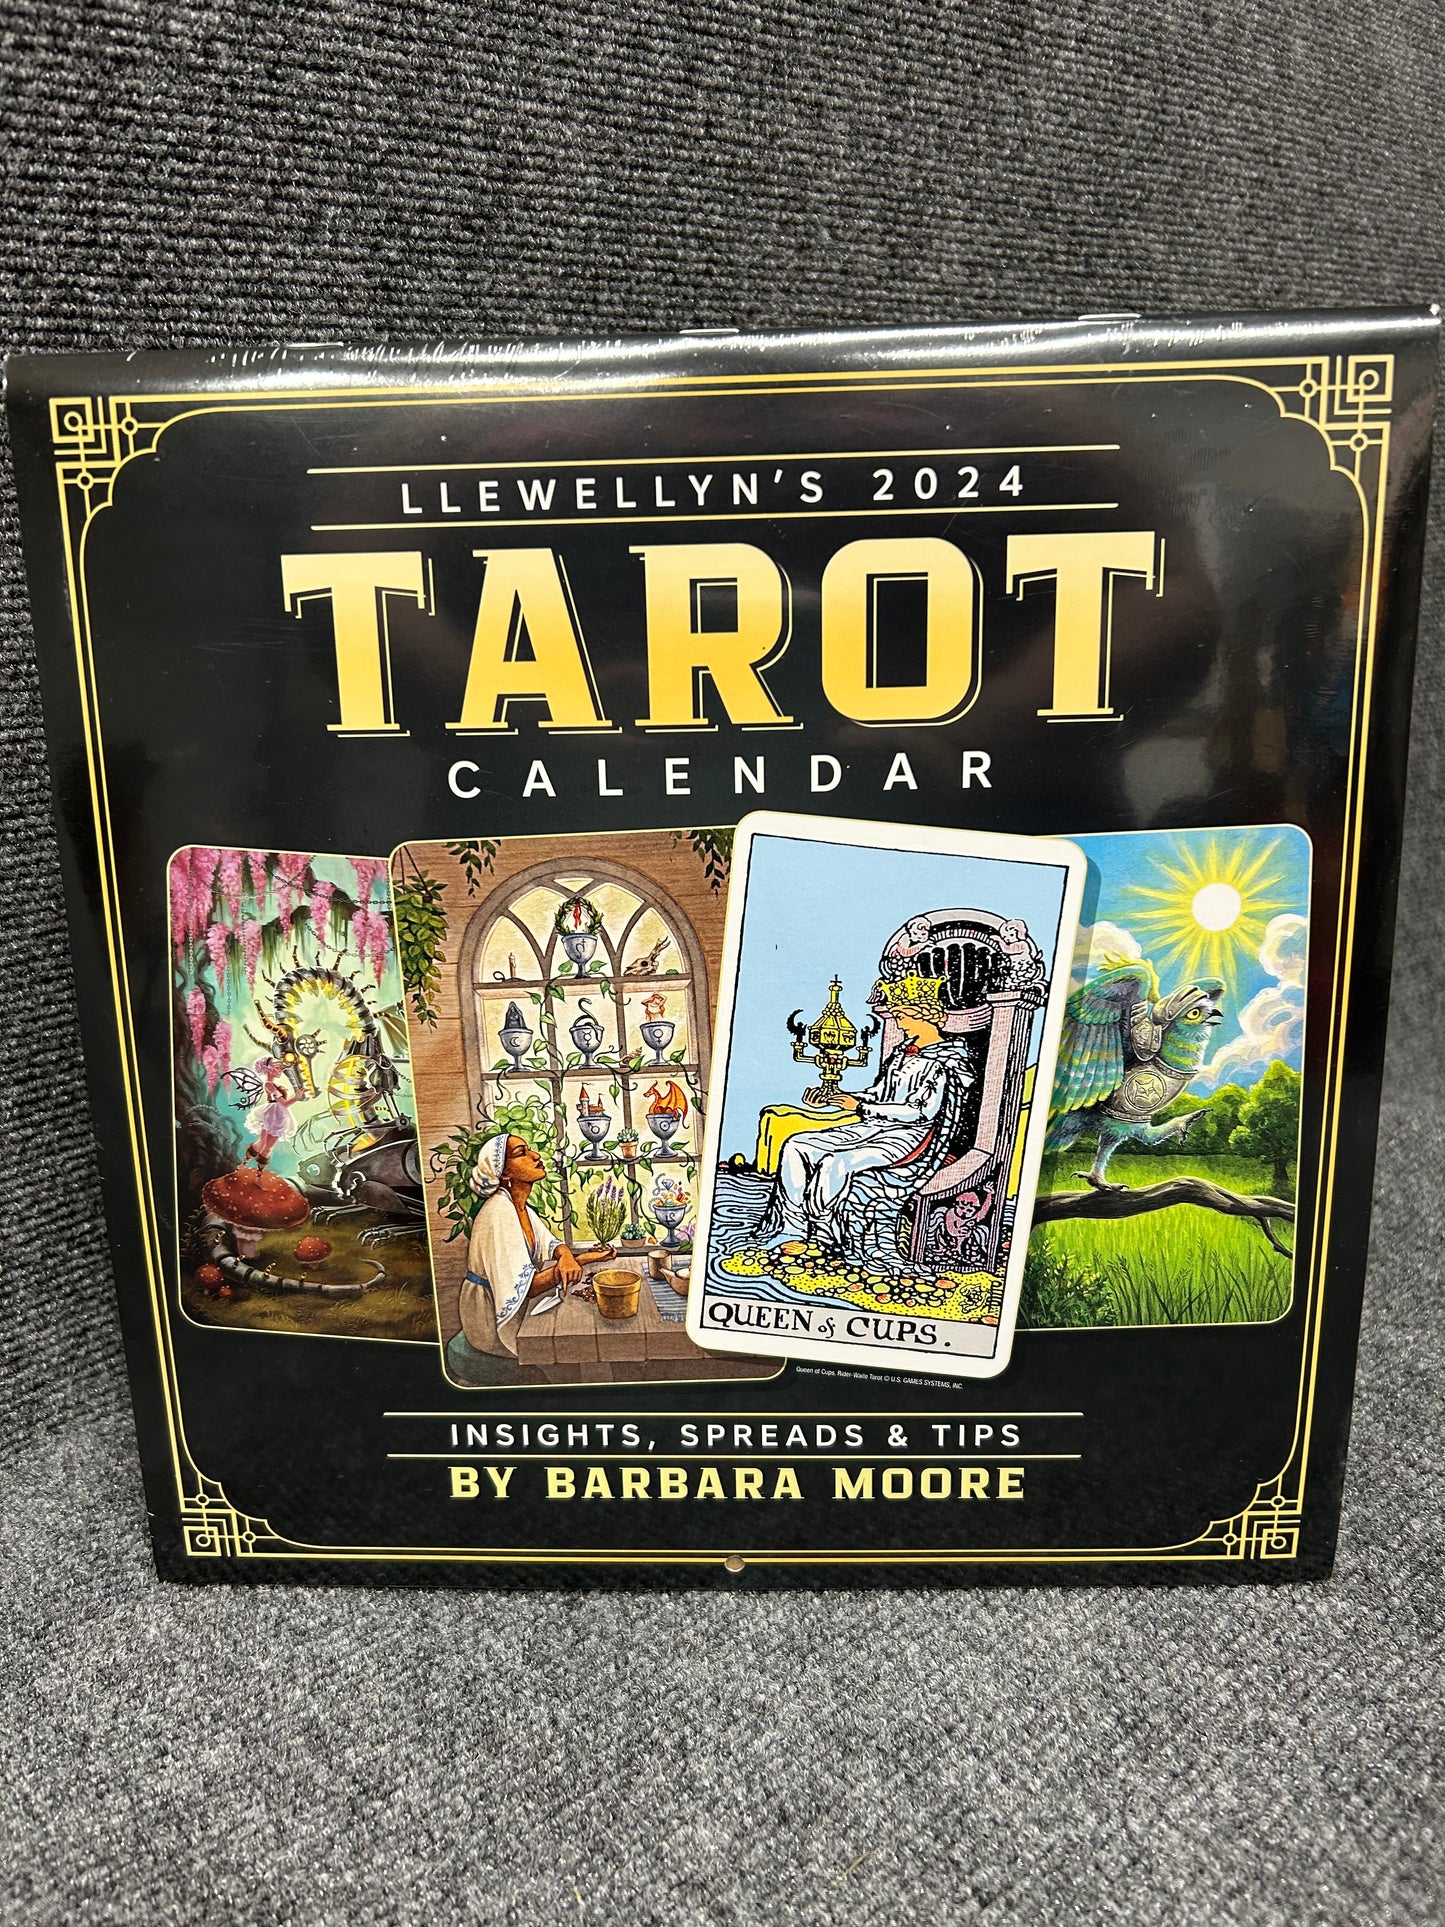 Llewellyn's 2024 Tarot Calendar